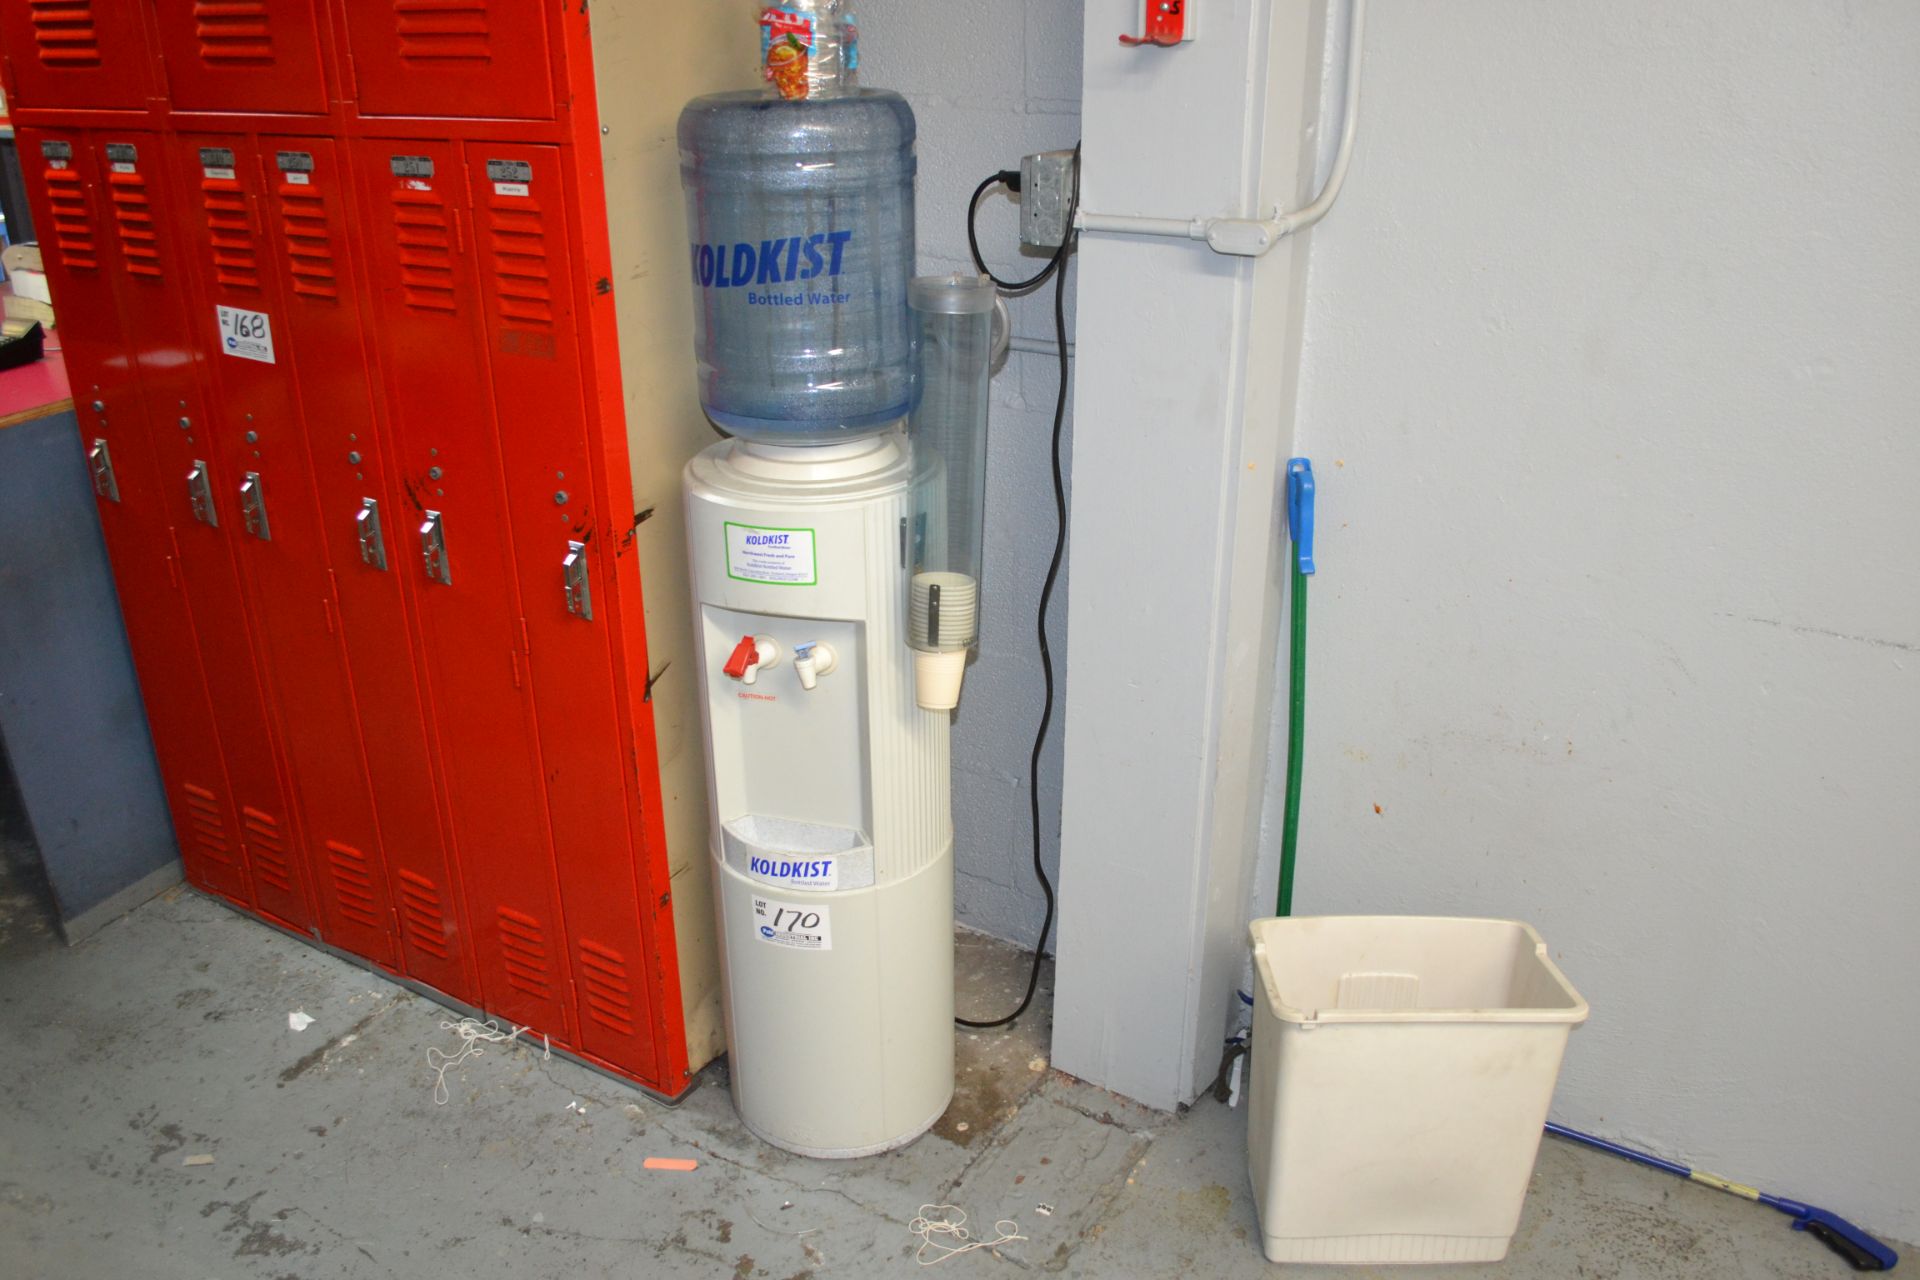 Kold Kist Water Dispenser